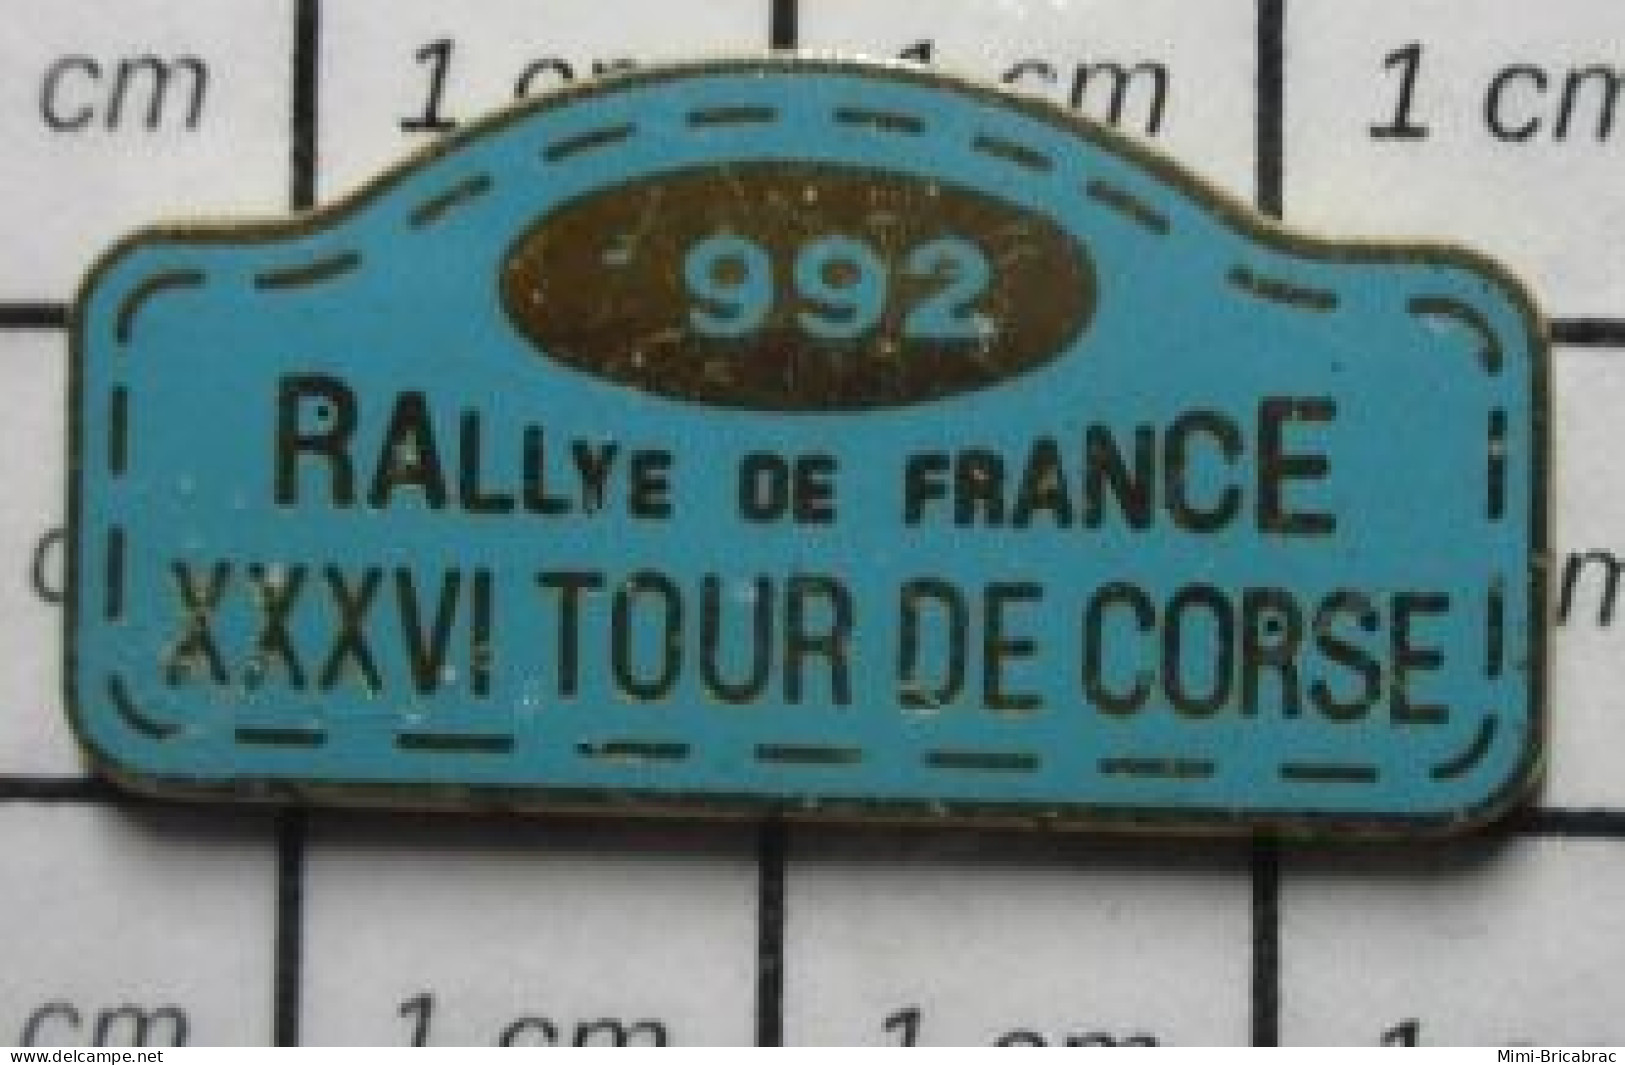 217 Pin's Pins / Beau Et Rare / SPORTS / AUTOMOBILE RALLYE DE FRANCE (??) XXXVIe TOUR DE CORSE 1992 - Automobilismo - F1